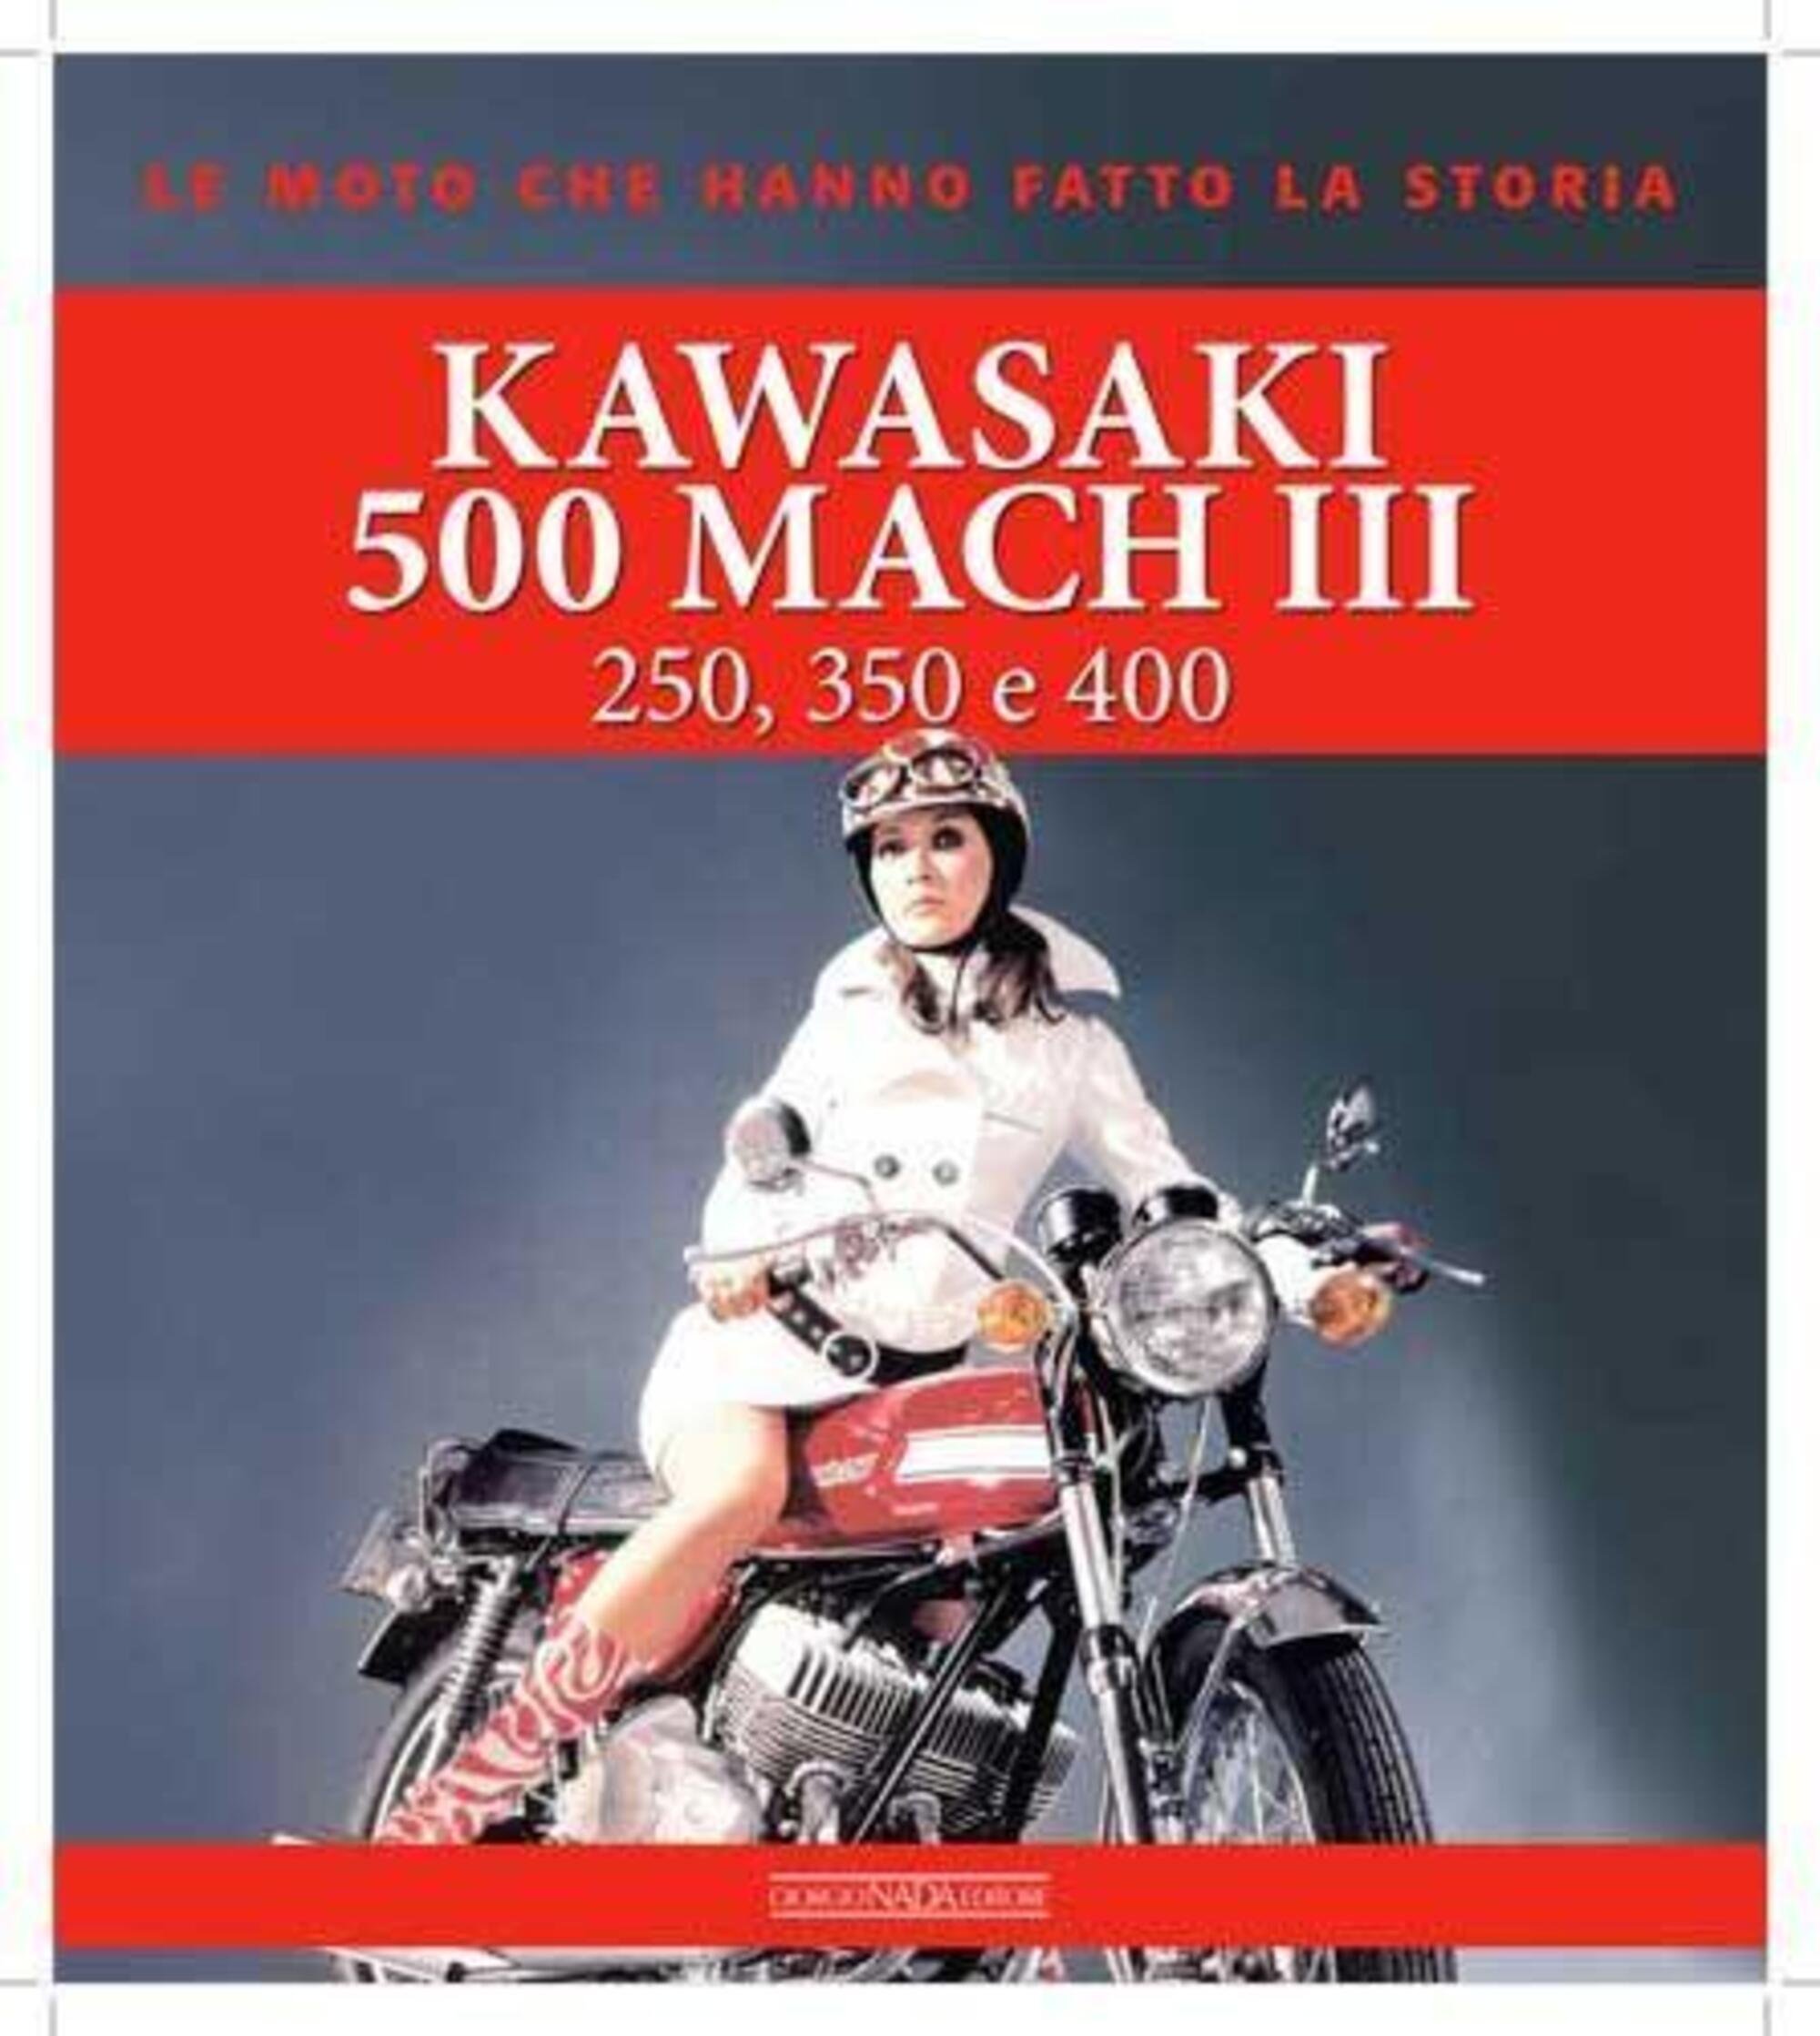 Kawasaki 500 Mach III (250,350 e 400), tutto sul mito